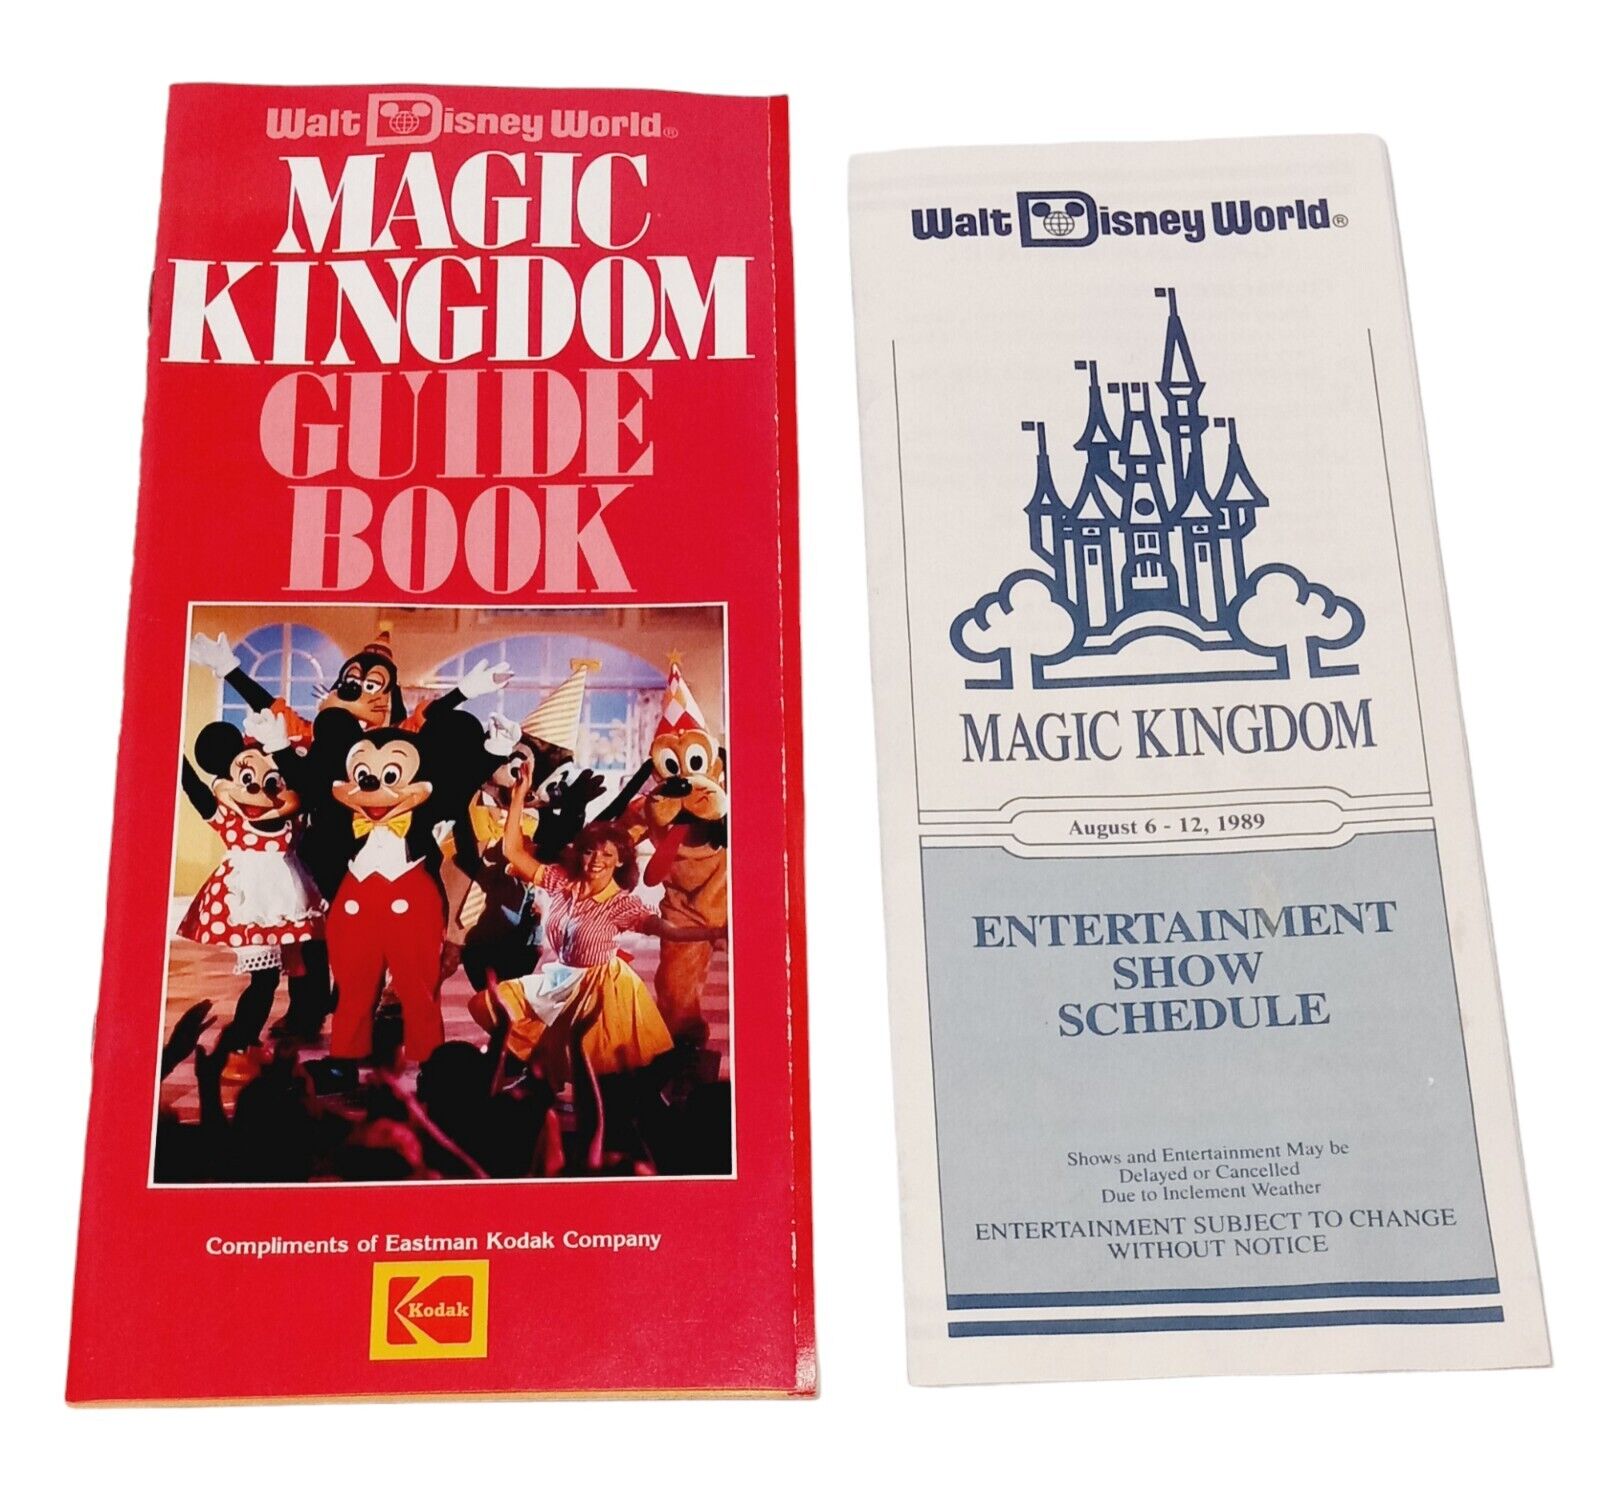 VINTAGE 1989 DISNEY MAGIC KINGDOM GUIDE BOOK & ENTERTAINMENT SHOW SCHEDULE